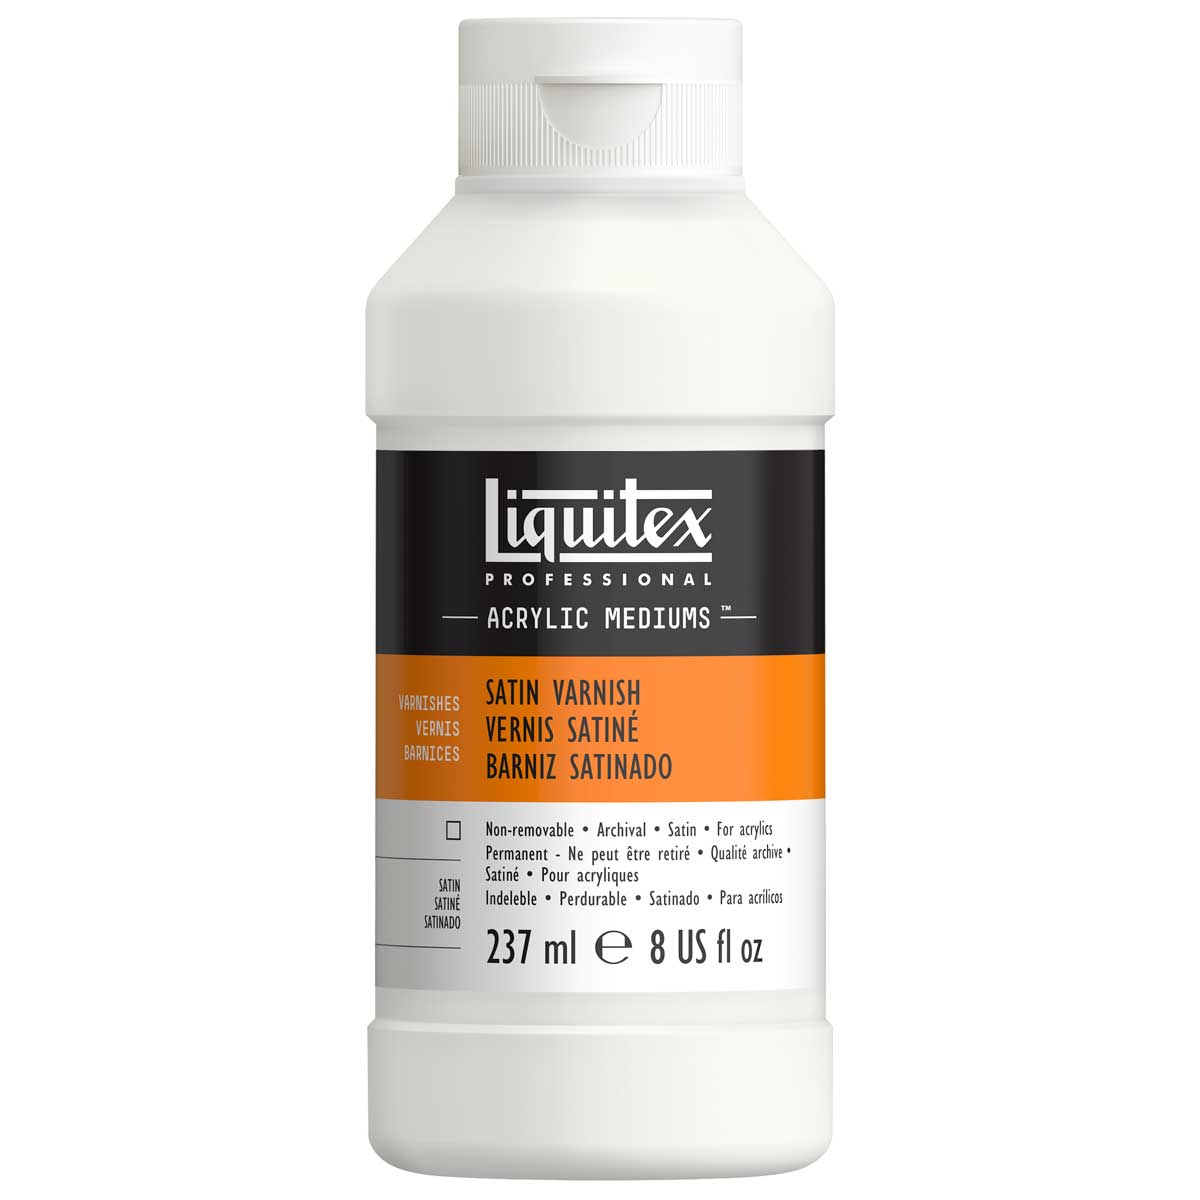 Liquitex Professional Satin Varnish - 8 oz (237ml)